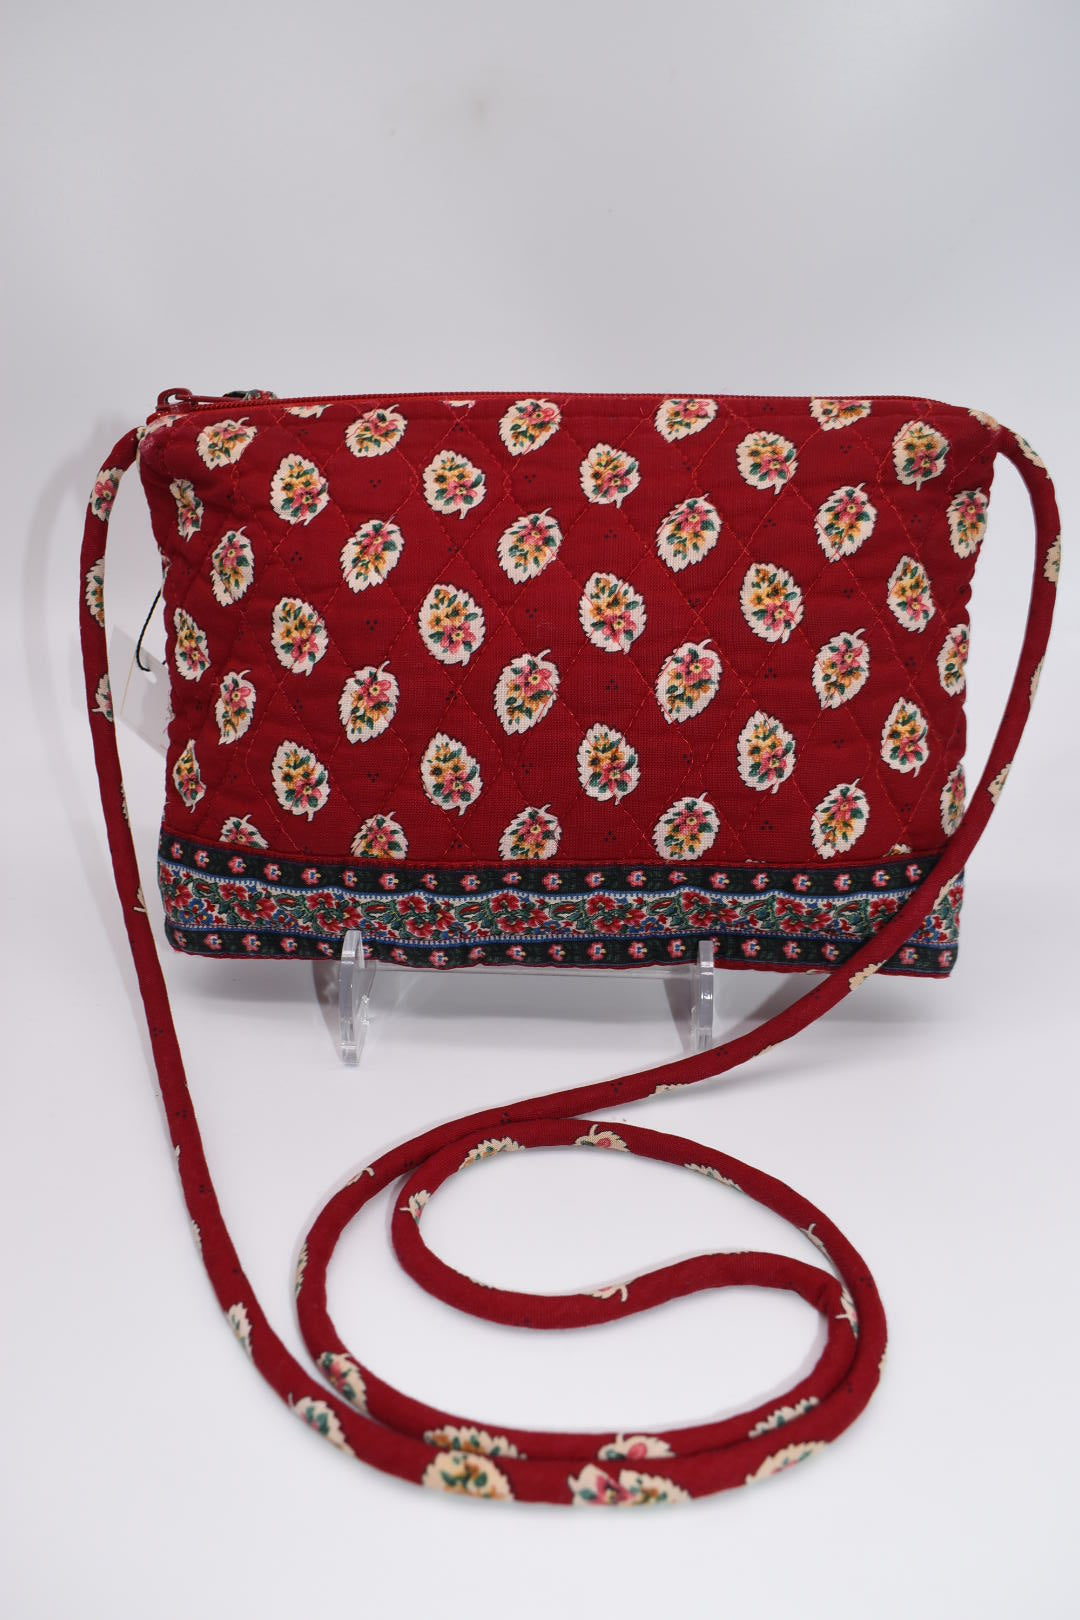 Vera Bradley Petite Crossbody Bag in "Red Leaf - 1997" Pattern